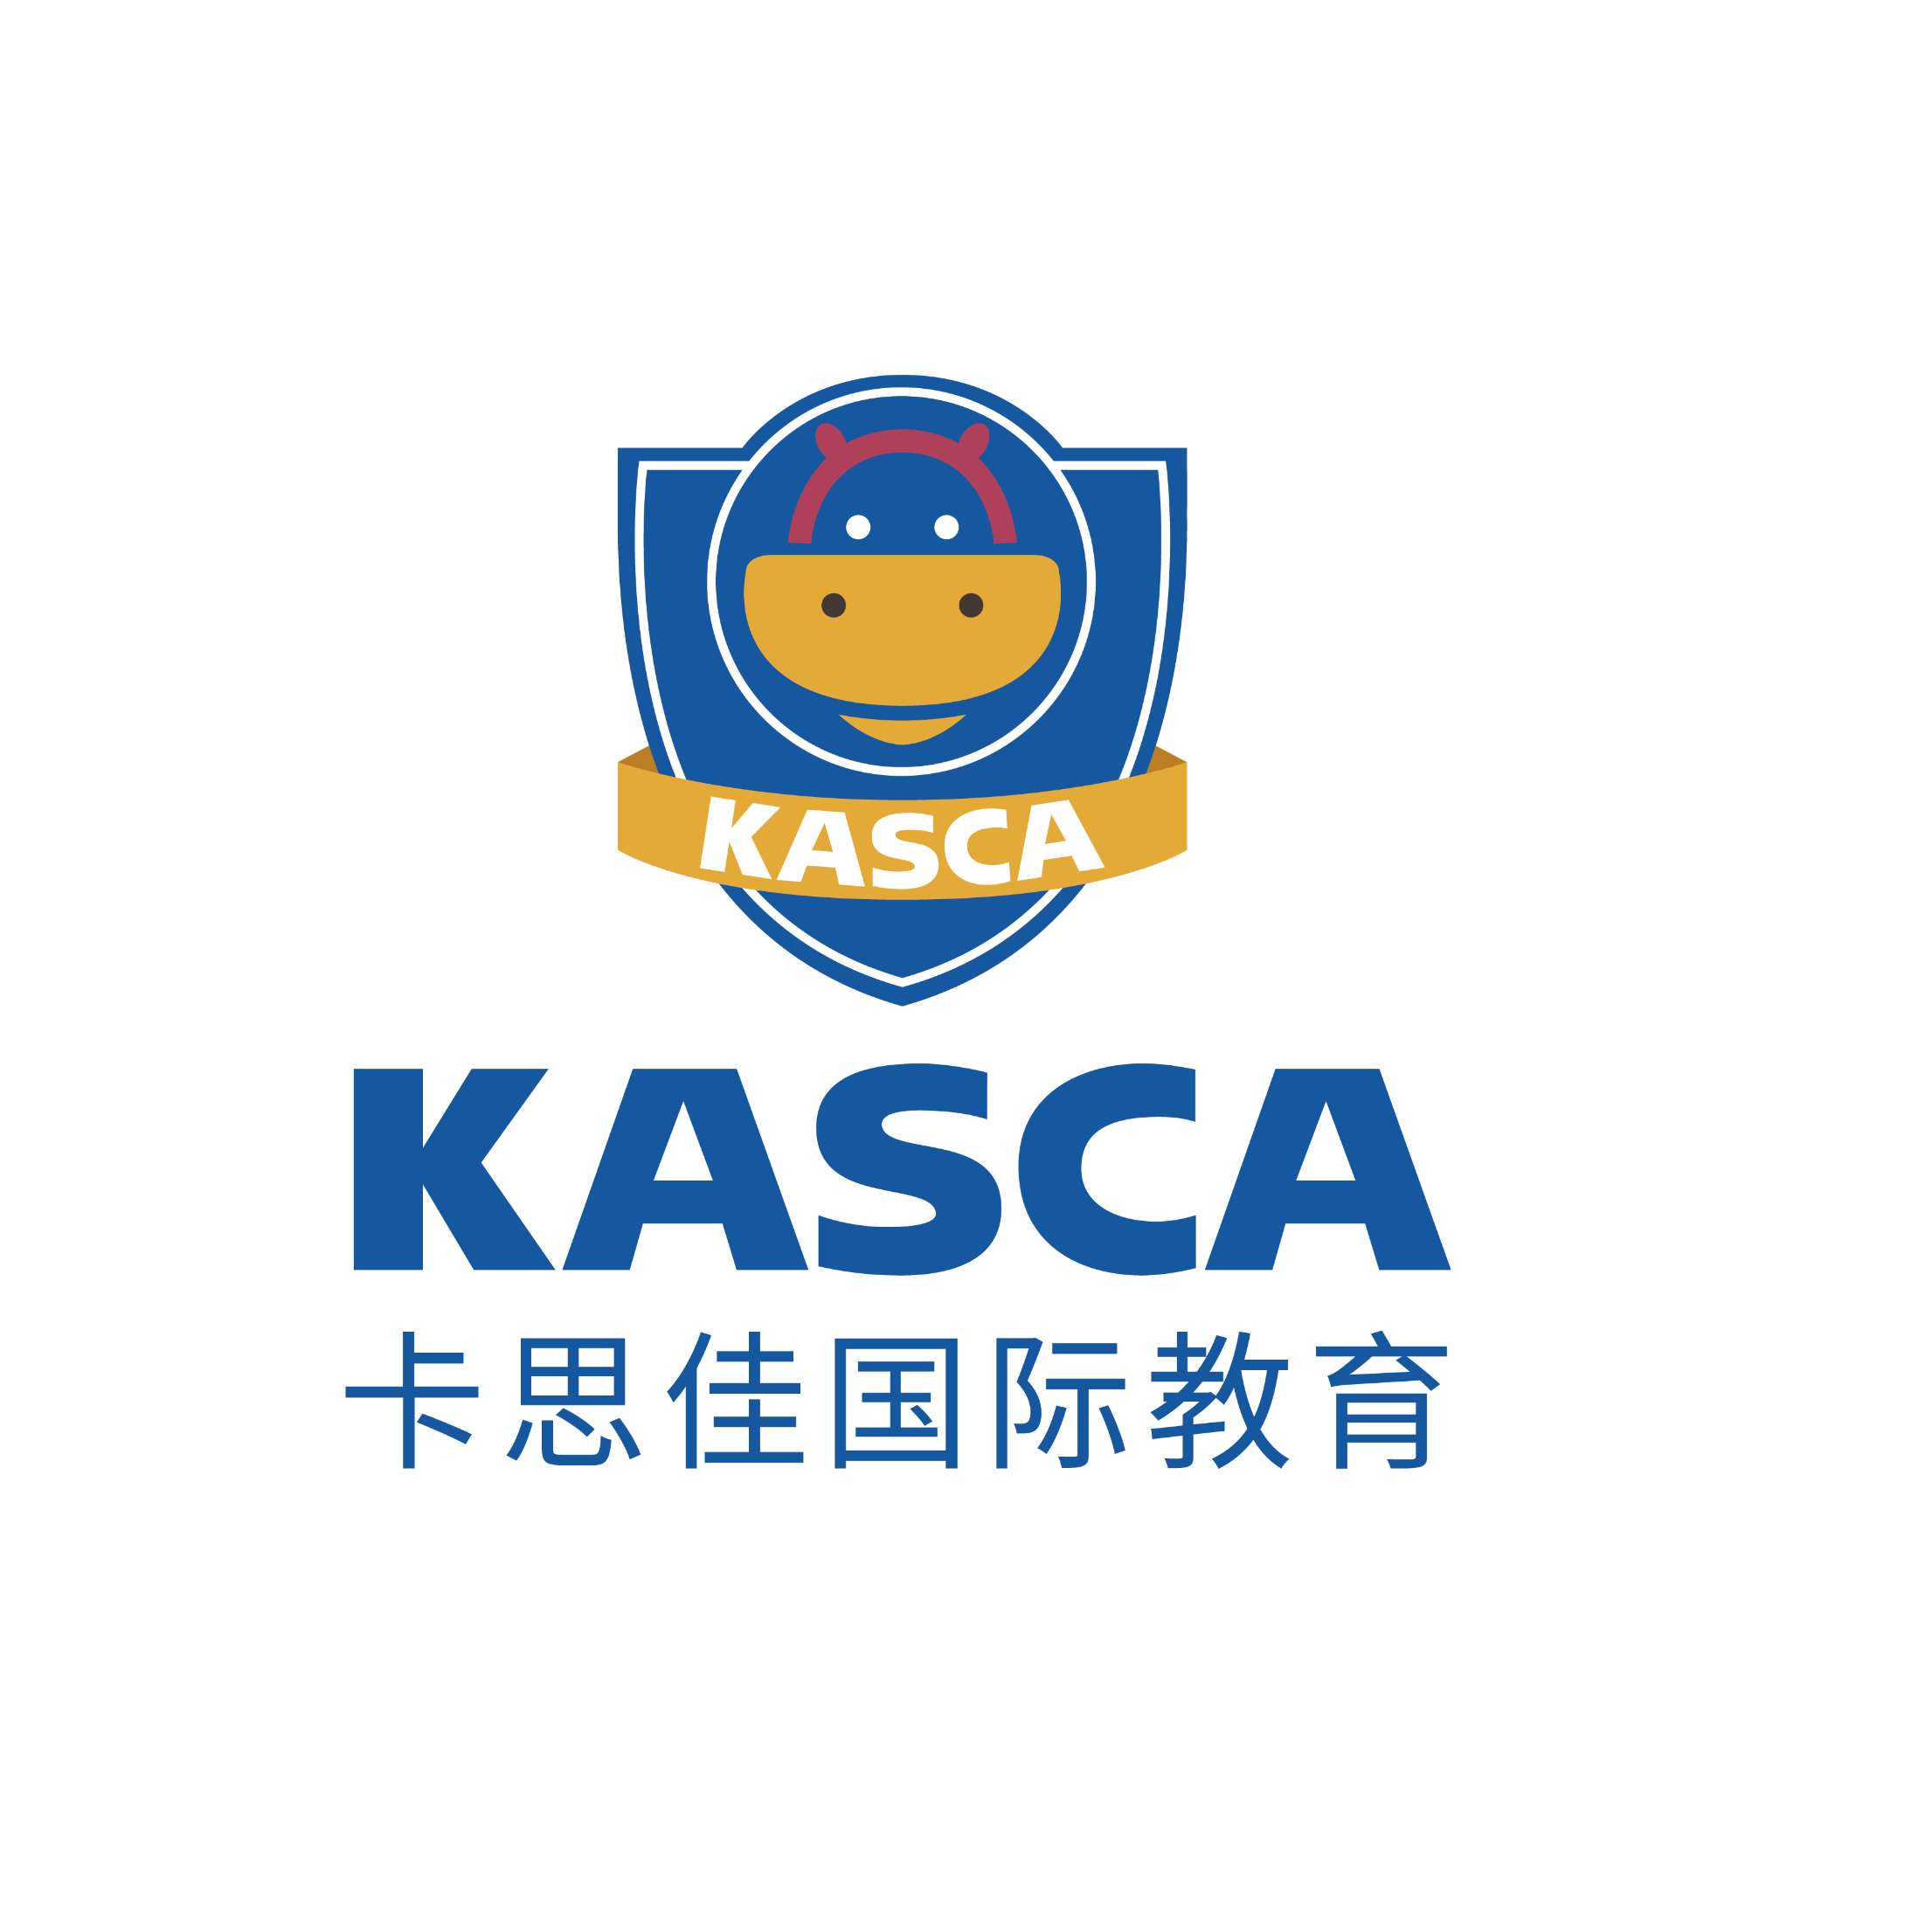 KASCA logo